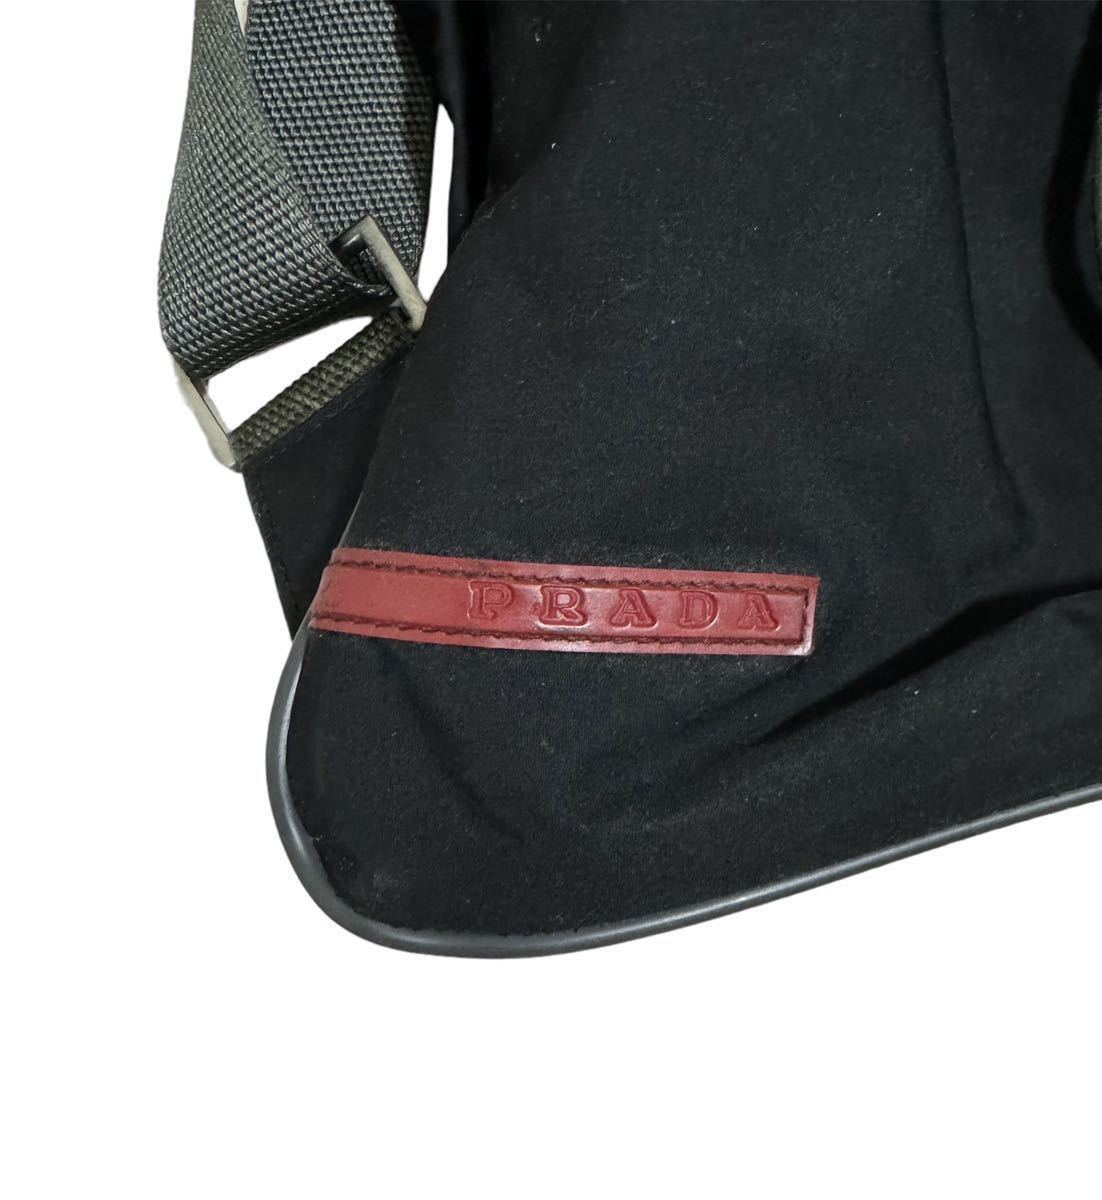 90s 00s archive vintage prada sport backpack nylon bag body bag